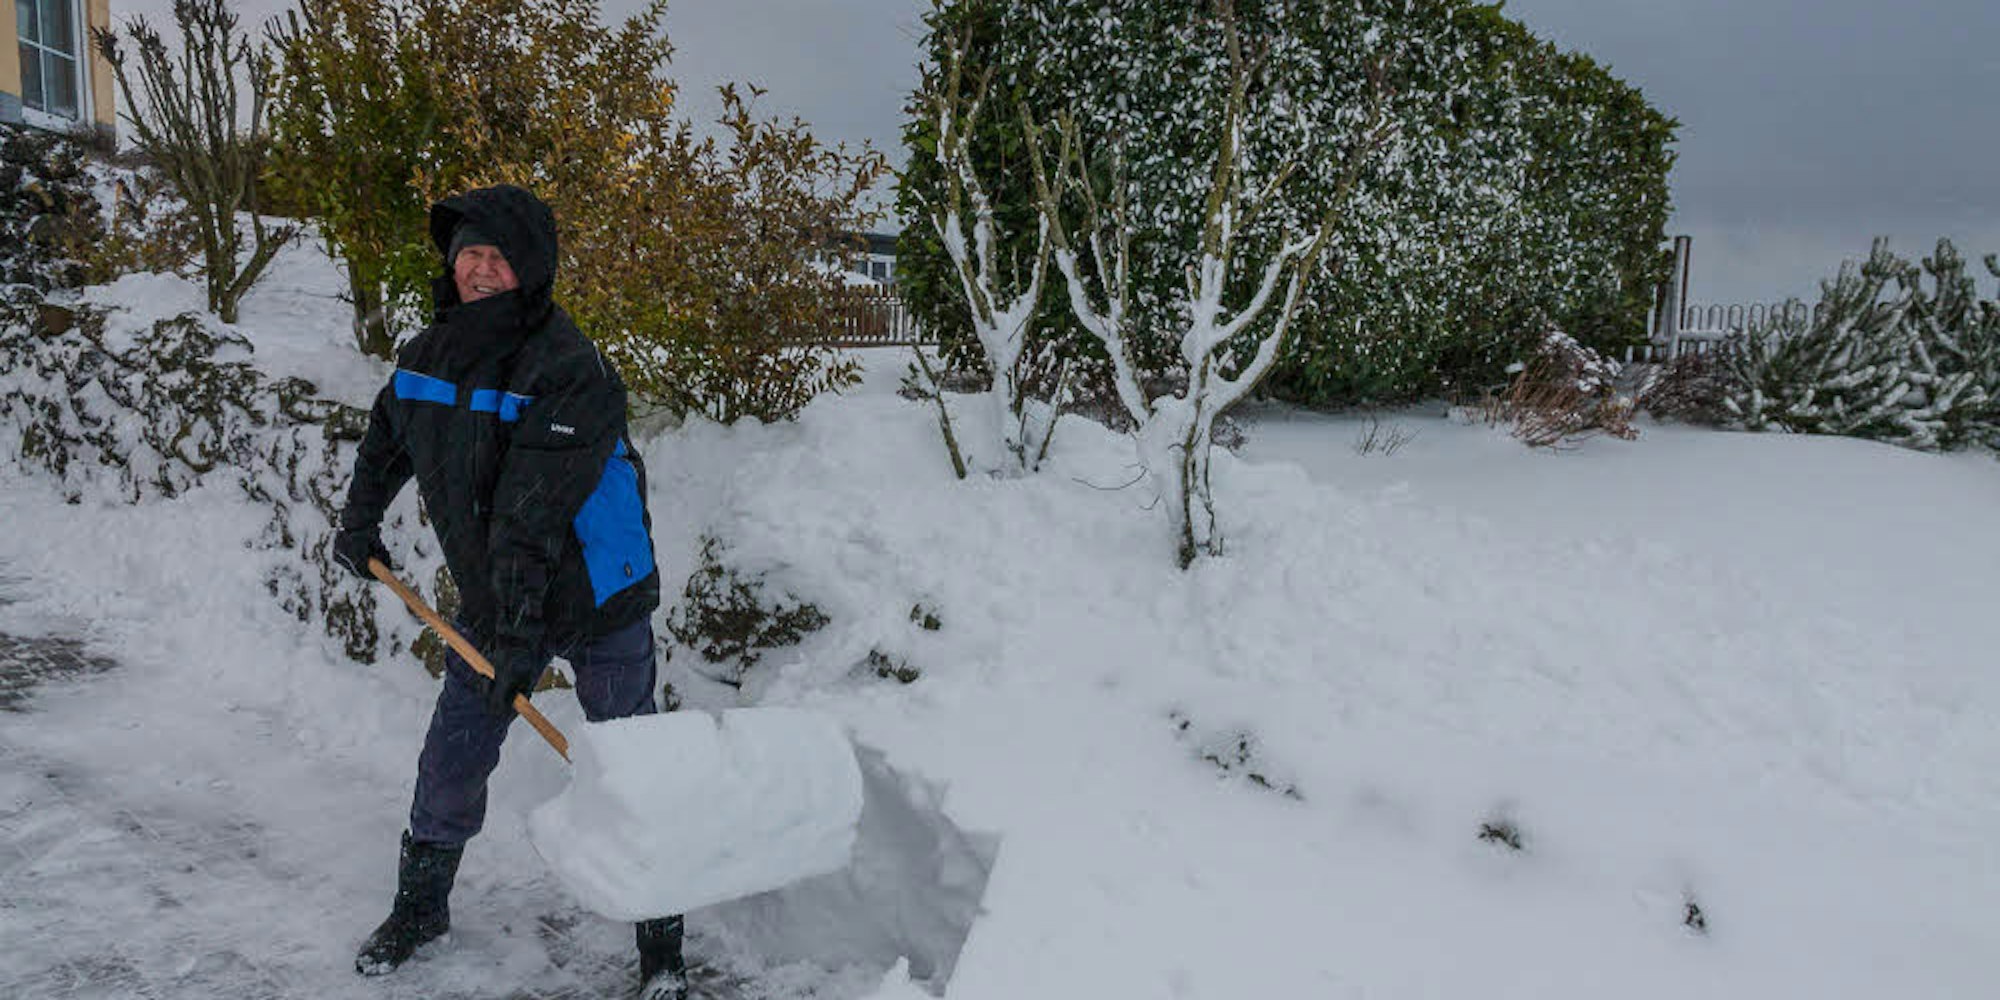 Rund ein halber Meter Schnee lag in der Einfahrt von Ingo Puzalowski in Blankenheim.